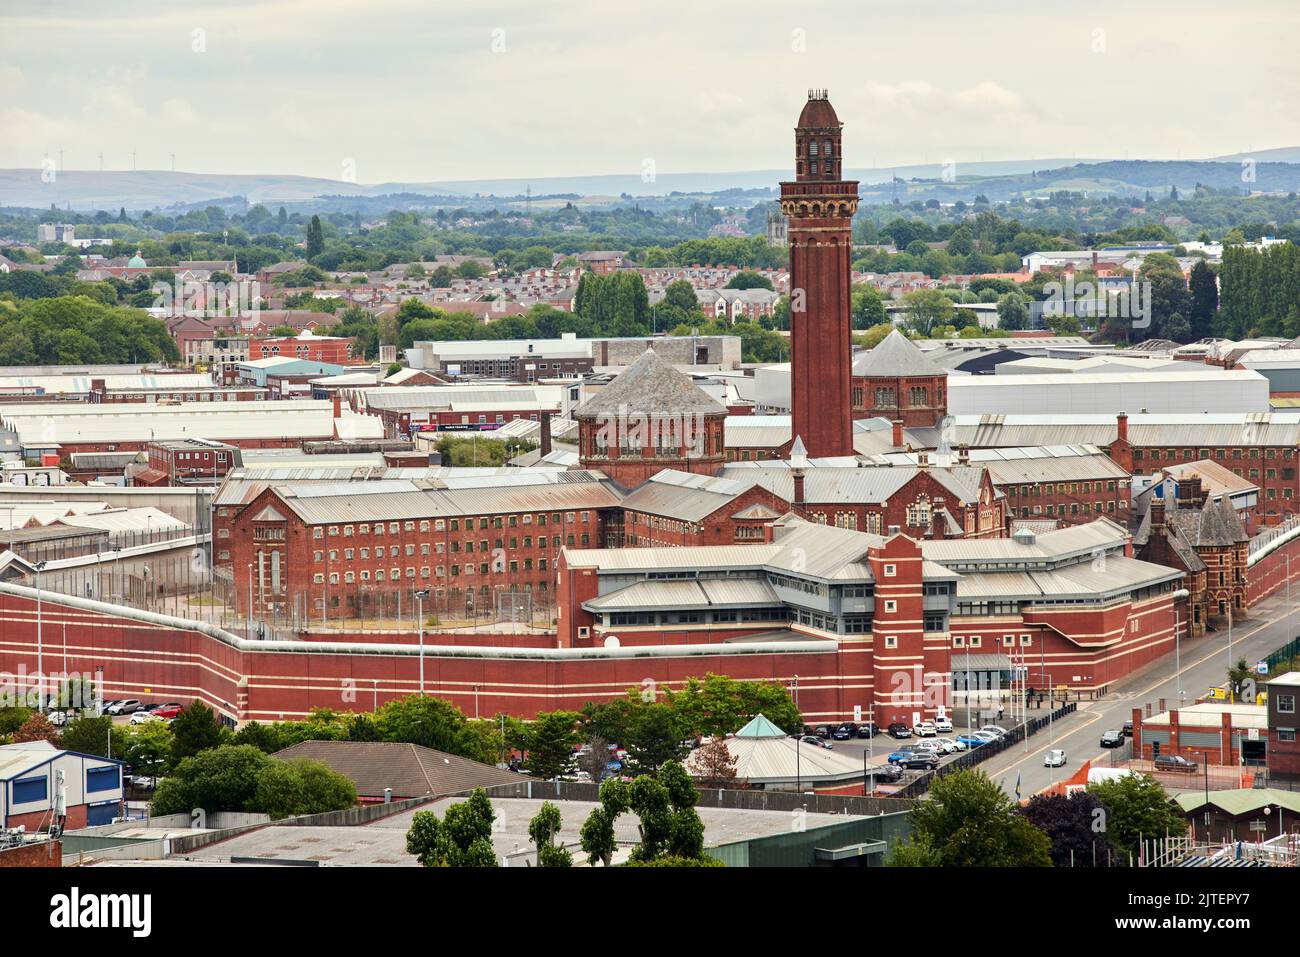 Her Majesty's Prison Service, HM Prison Manchester Kategorie-A-Männergefängnis, allgemein als Strangeways bezeichnet Stockfoto